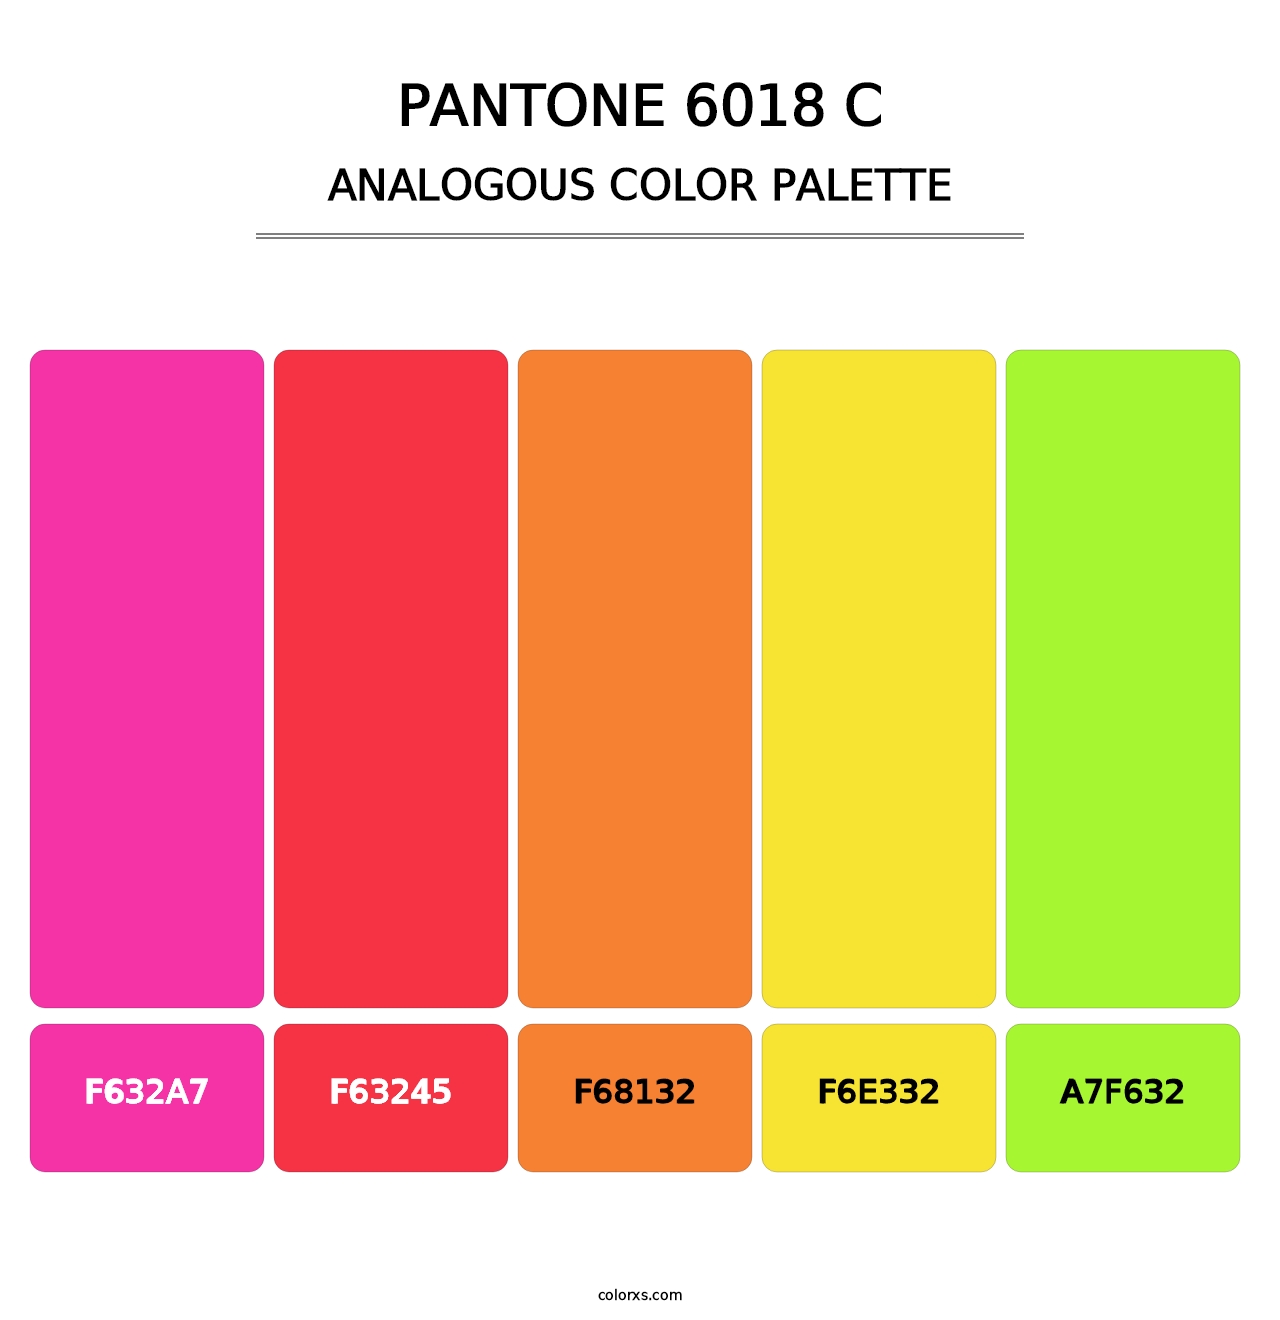 PANTONE 6018 C - Analogous Color Palette